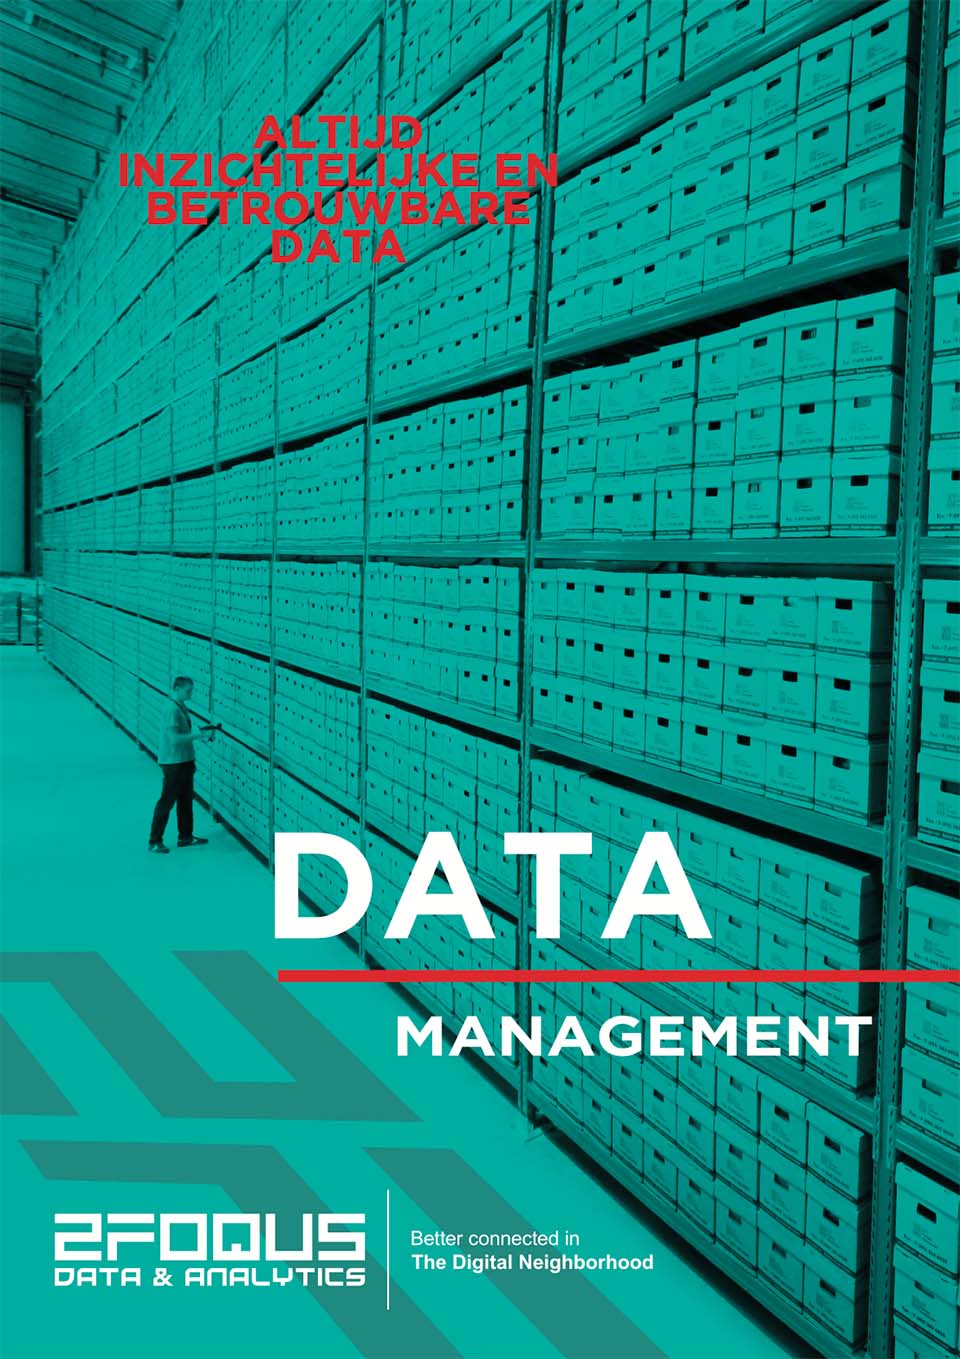 Voorkant Data Management leaflet